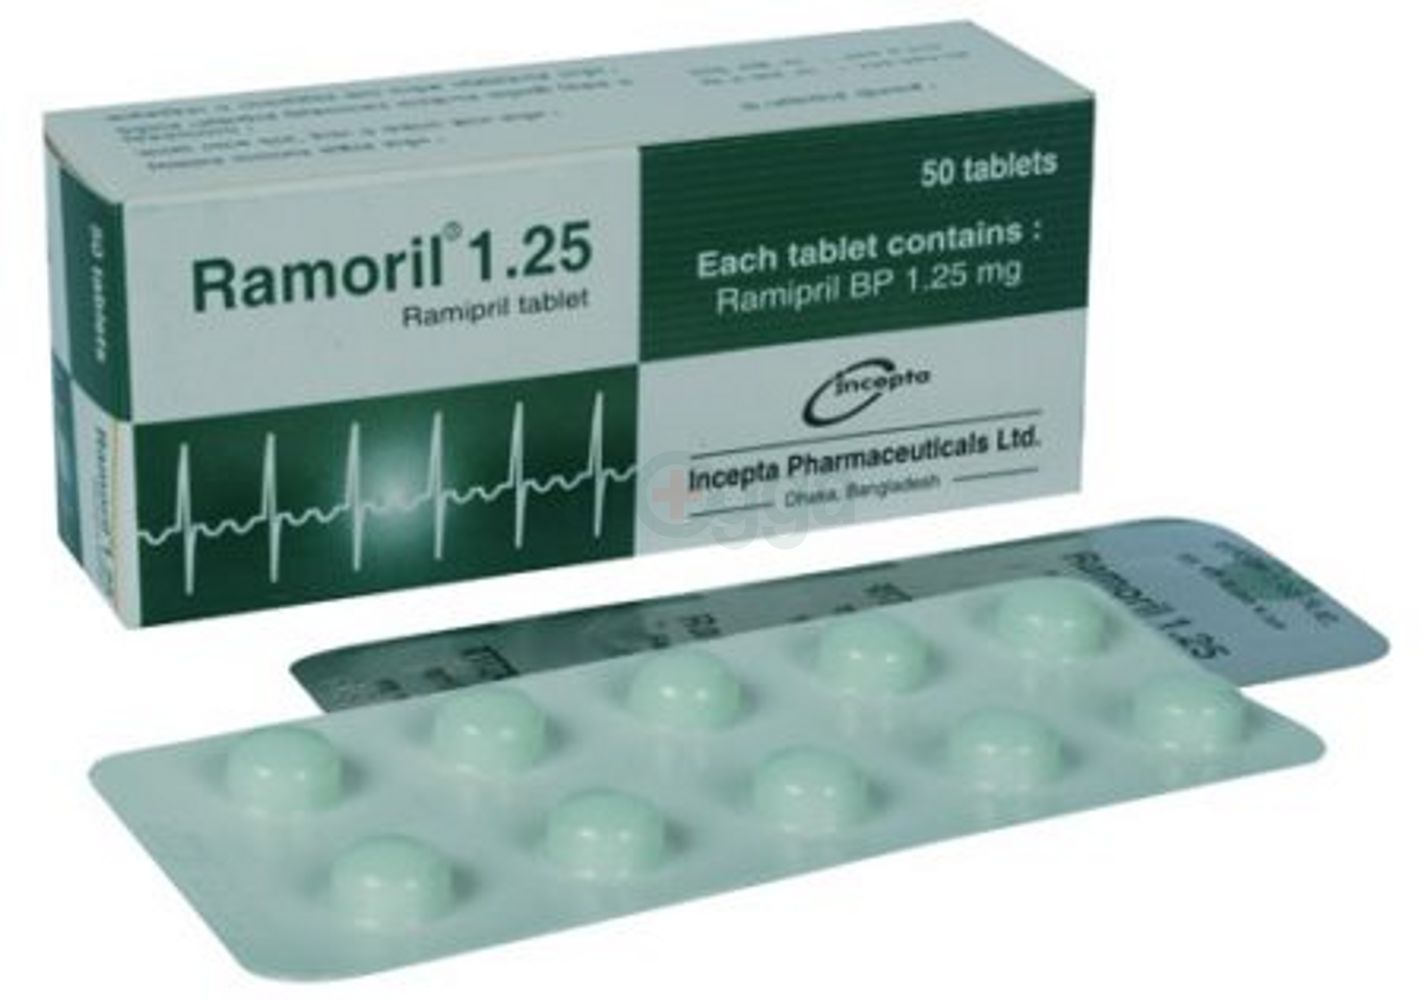 Ramoril 1.25